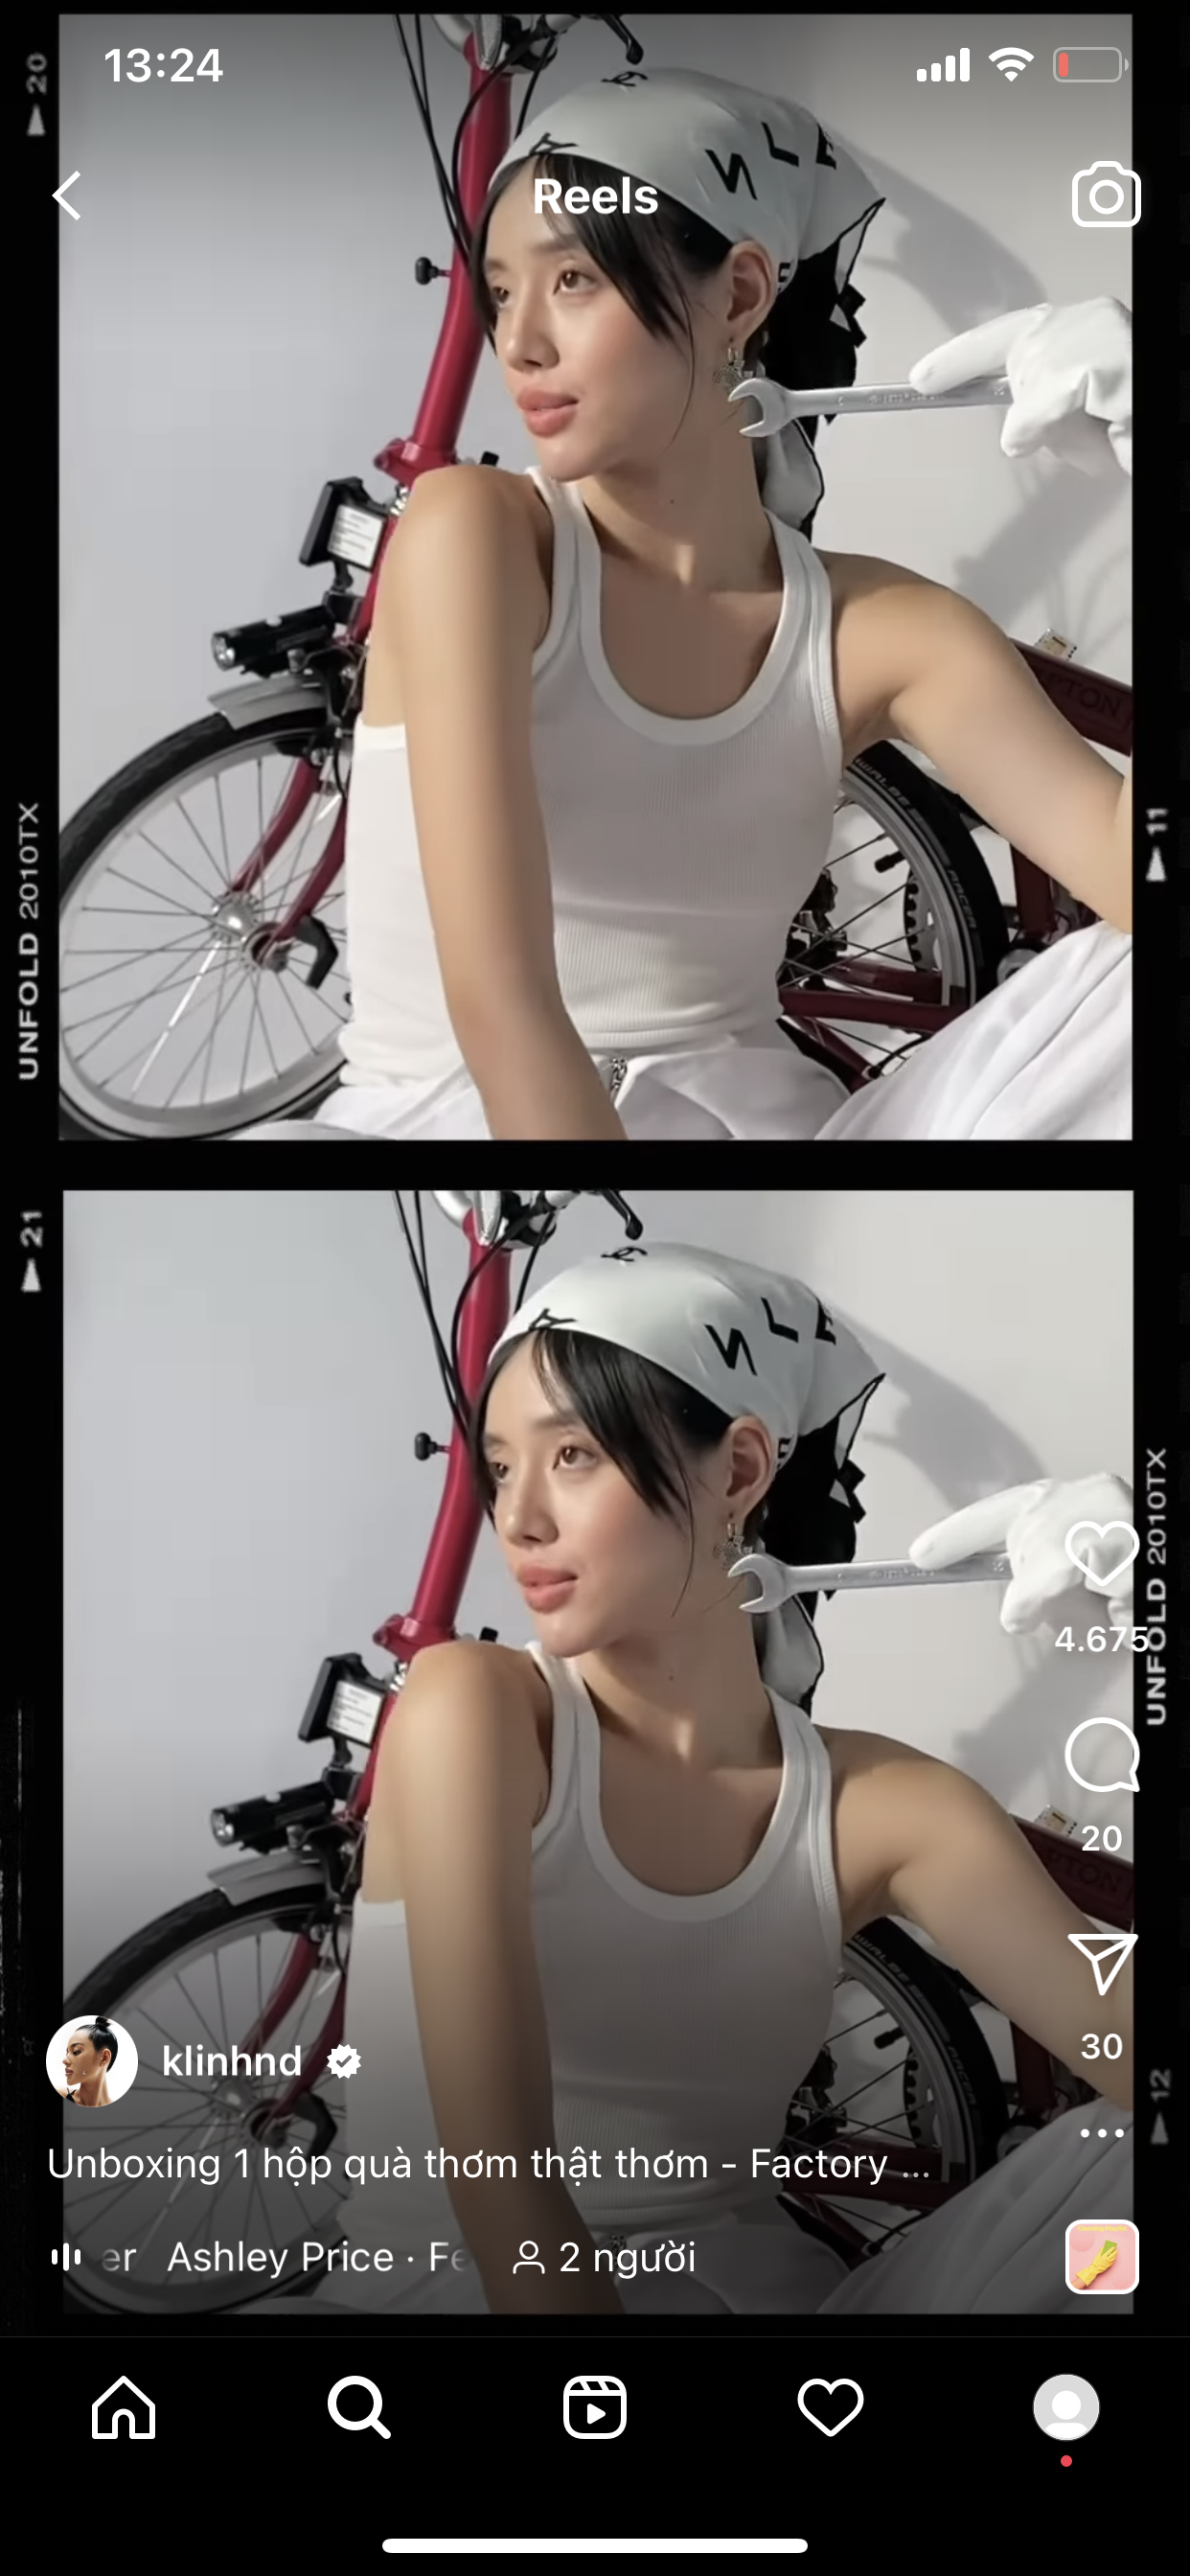 Soi background chụp ảnh của Cô Em Trendy, nhìn như xe đạp trẻ em nhưng giá đắt hơn cả Honda SH - Ảnh 1.